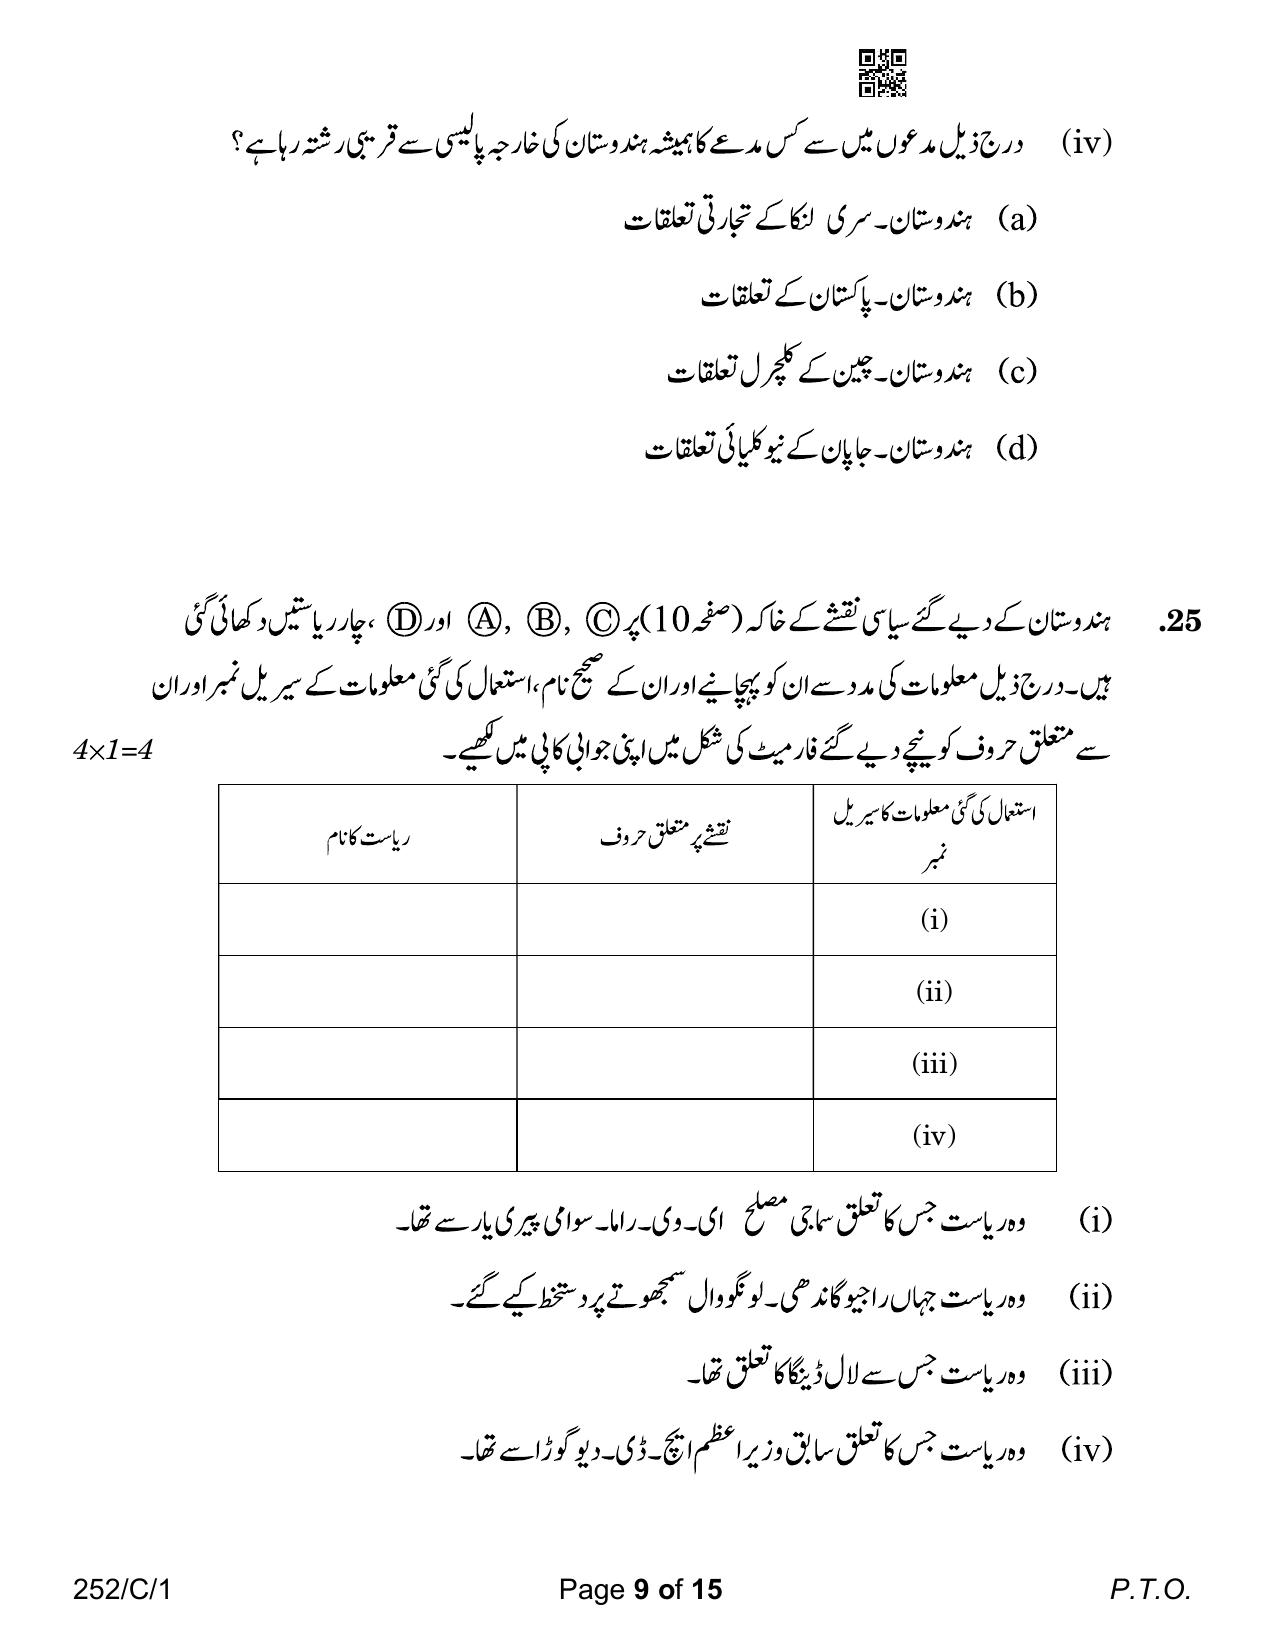 CBSE Class 12 252-1 Political Science Urdu Version 2023 (Compartment) Question Paper - Page 9